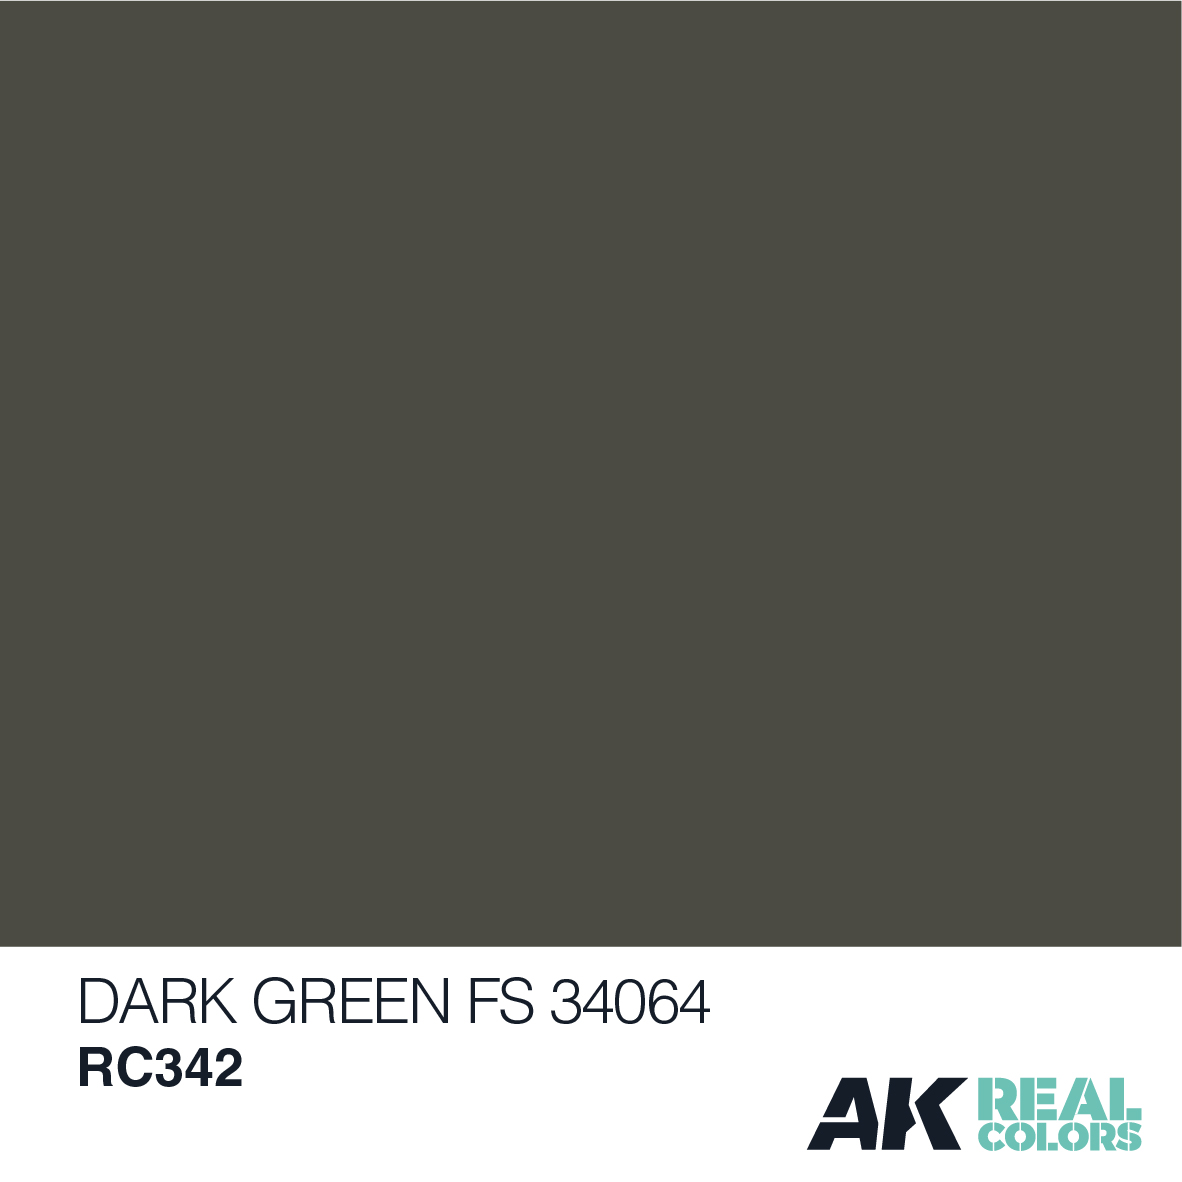 DARK GREEN FS 34064